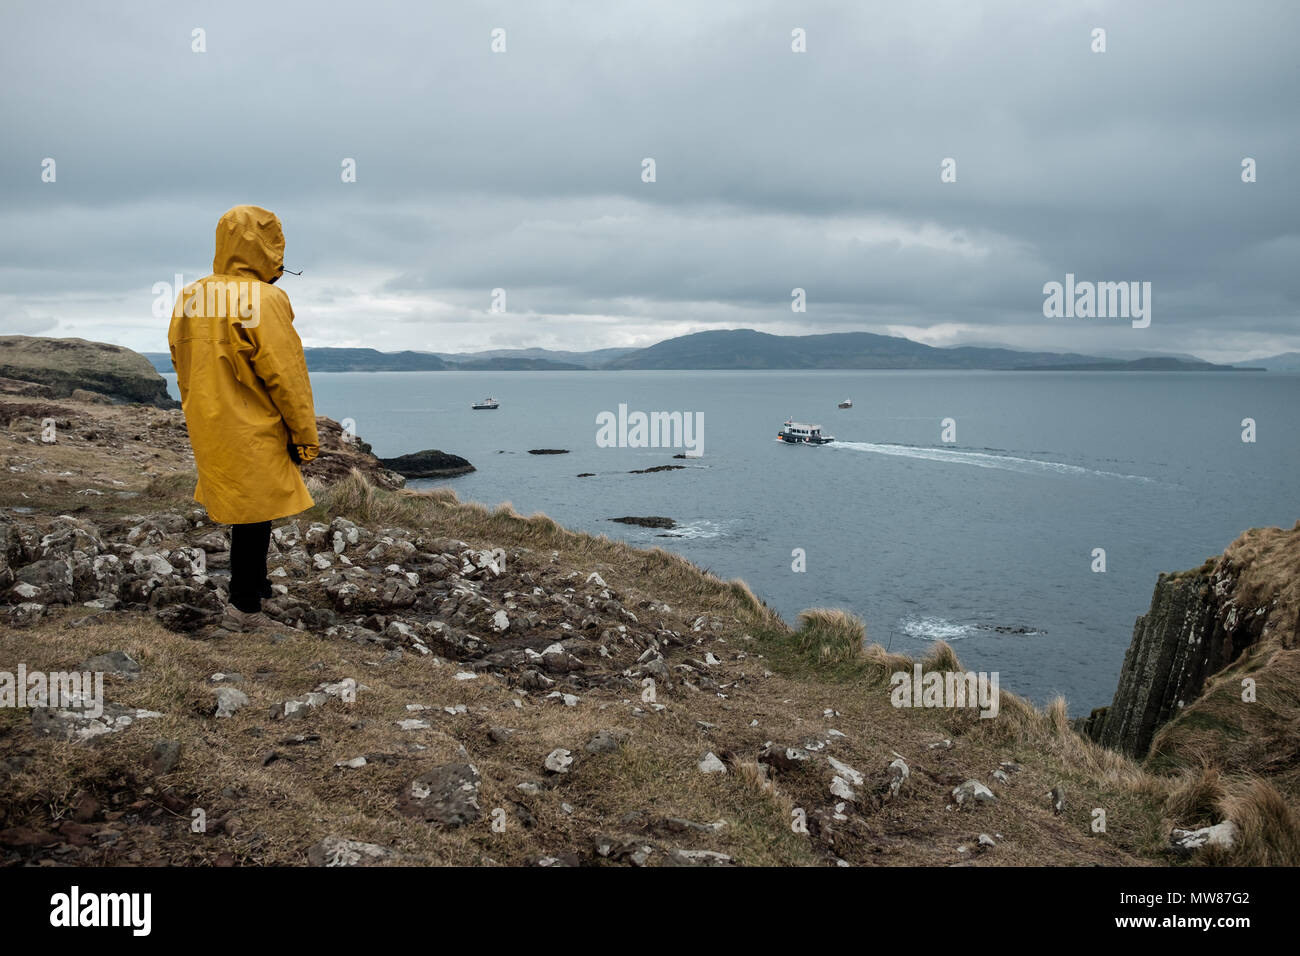 Frau mit Gelb oilskin Jacke beobachten ein Boot von Staffa Insel, in der Nähe der Isle of Mull in Schottland Stockfoto